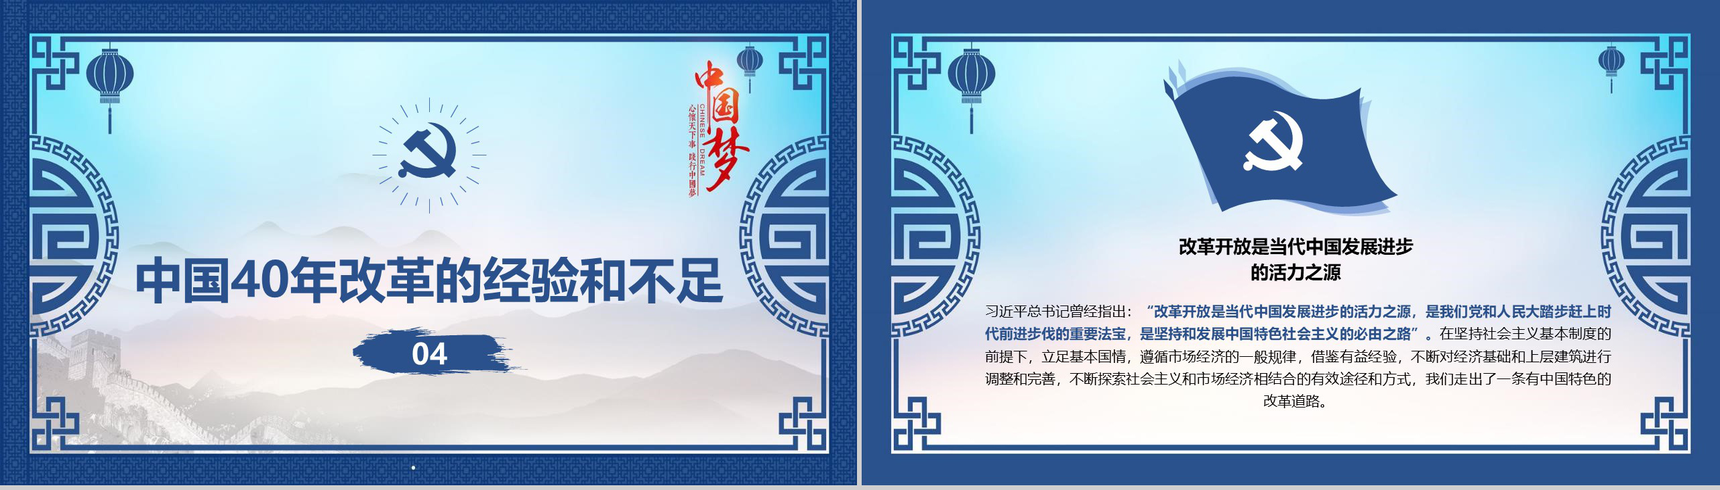 山水画中国梦改革开放40周年改革PPT模板-10